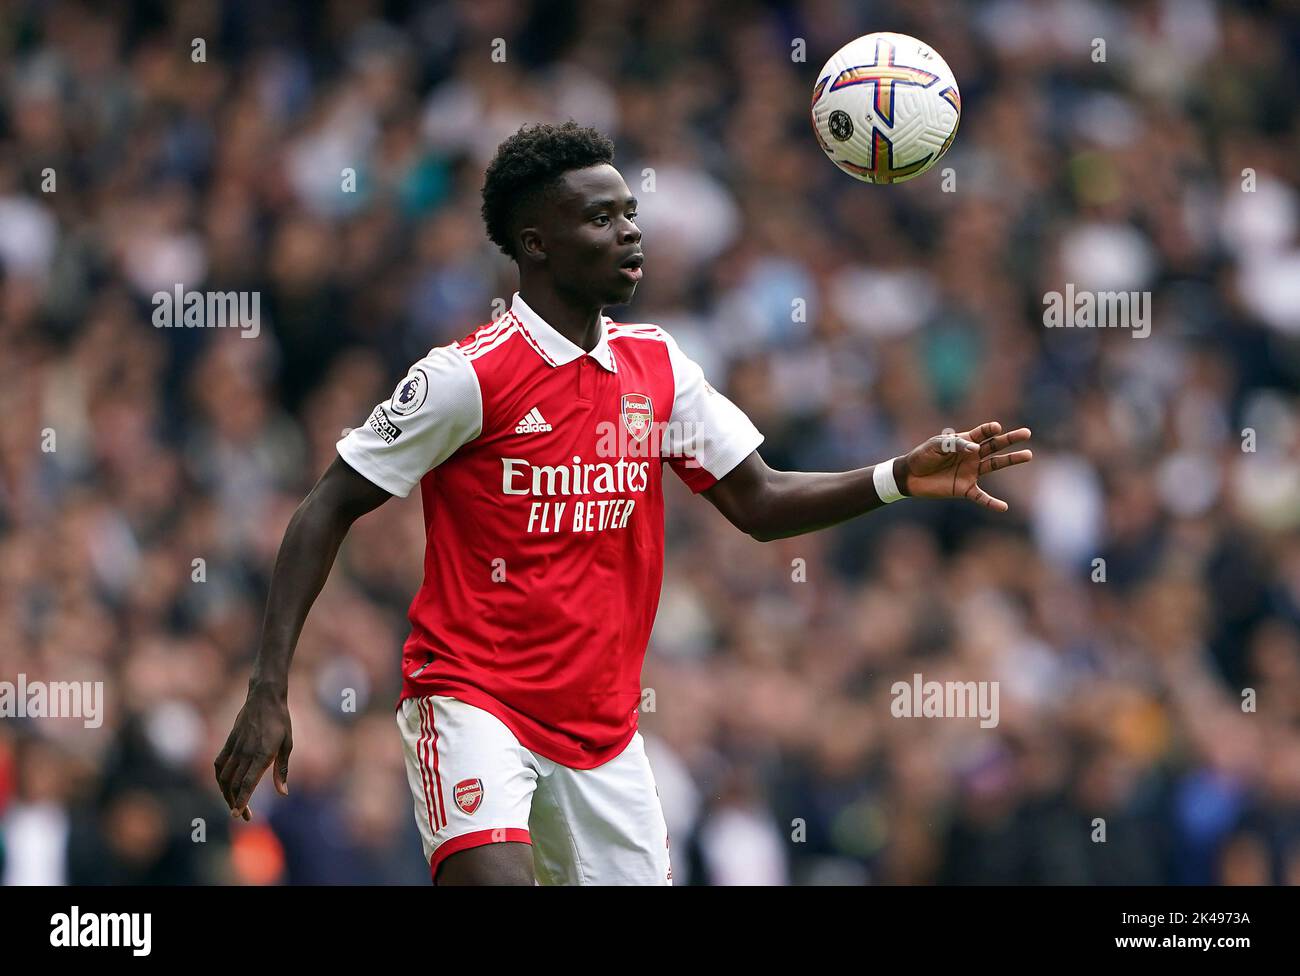 Bukayo Saka von Arsenal während des Spiels der Premier League im Emirates Stadium in London. Bilddatum: Samstag, 1. Oktober 2022. Stockfoto